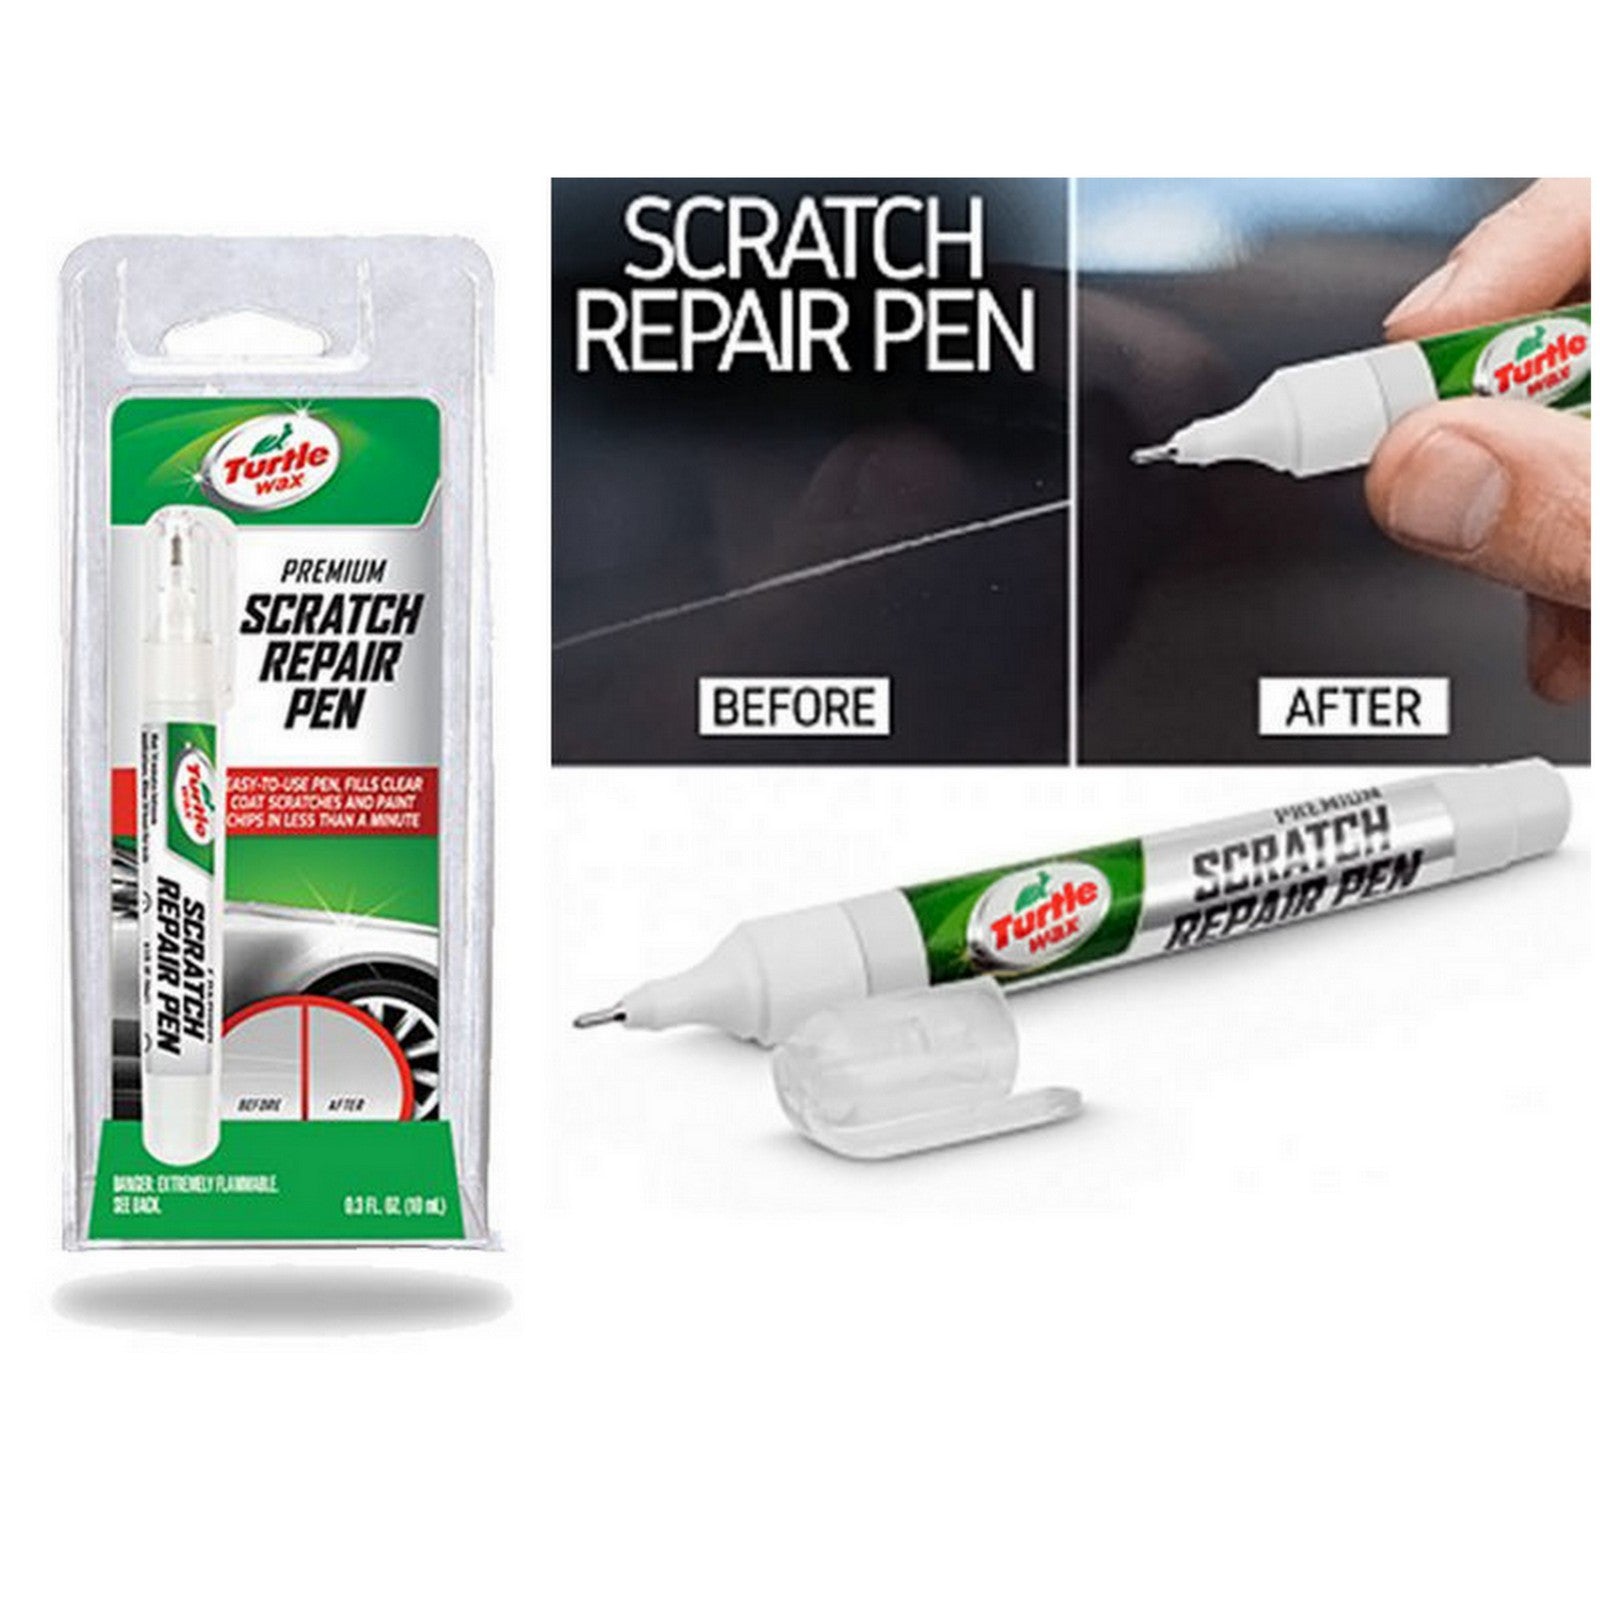 Turtle Wax Scratch Repair & Renew 2 x 207ml Scratch remover